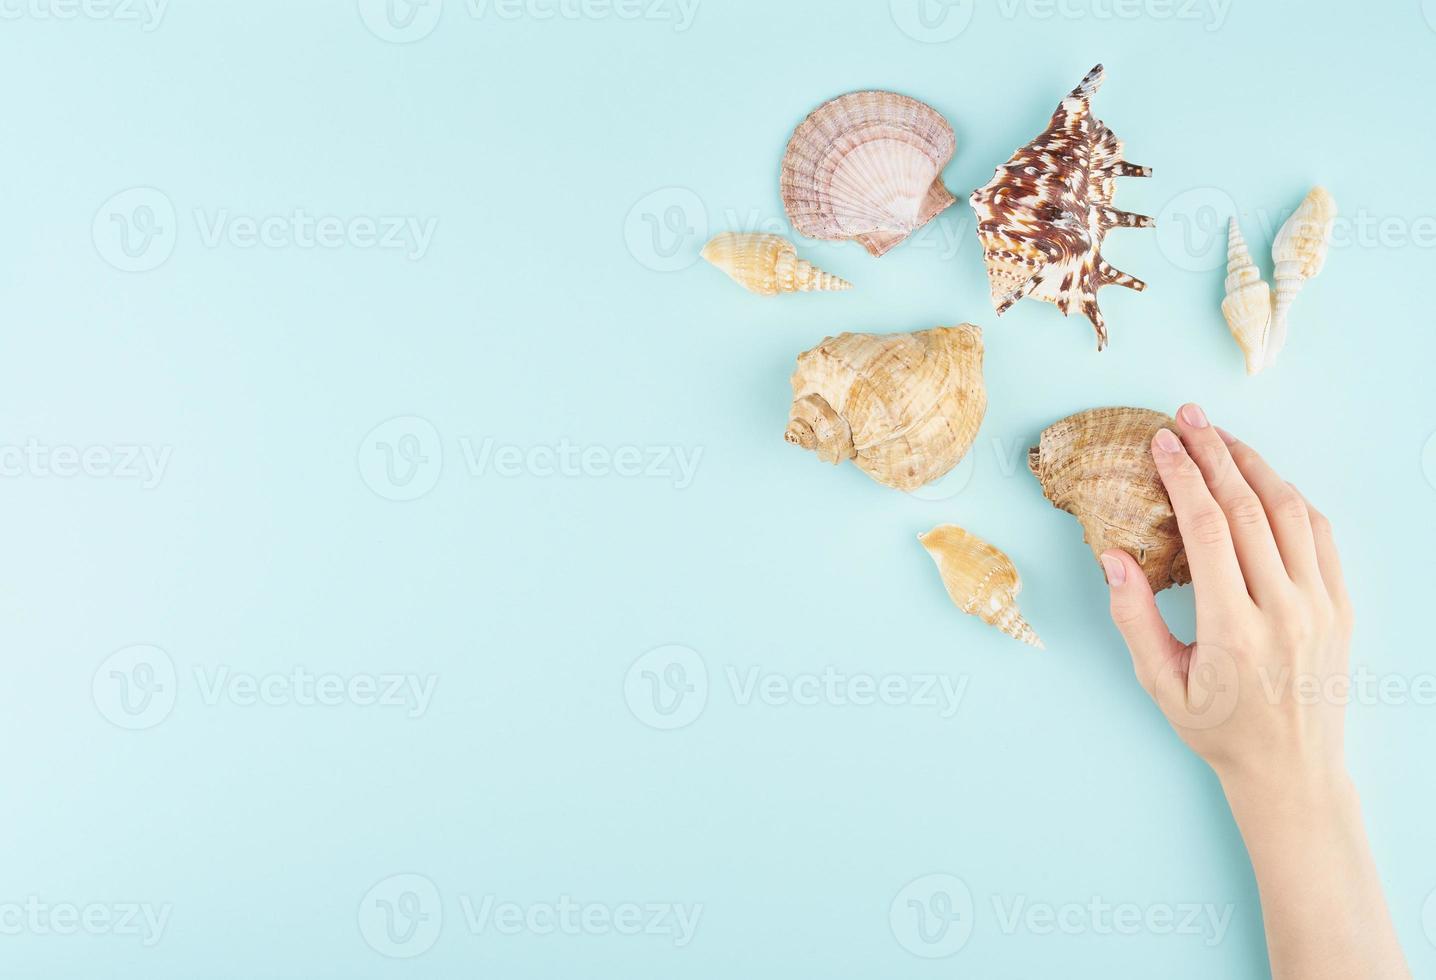 Frauenhand, die Muschel neben anderen Muscheln berührt, auf Draufsicht-Kopienraum des blauen Hintergrundes foto